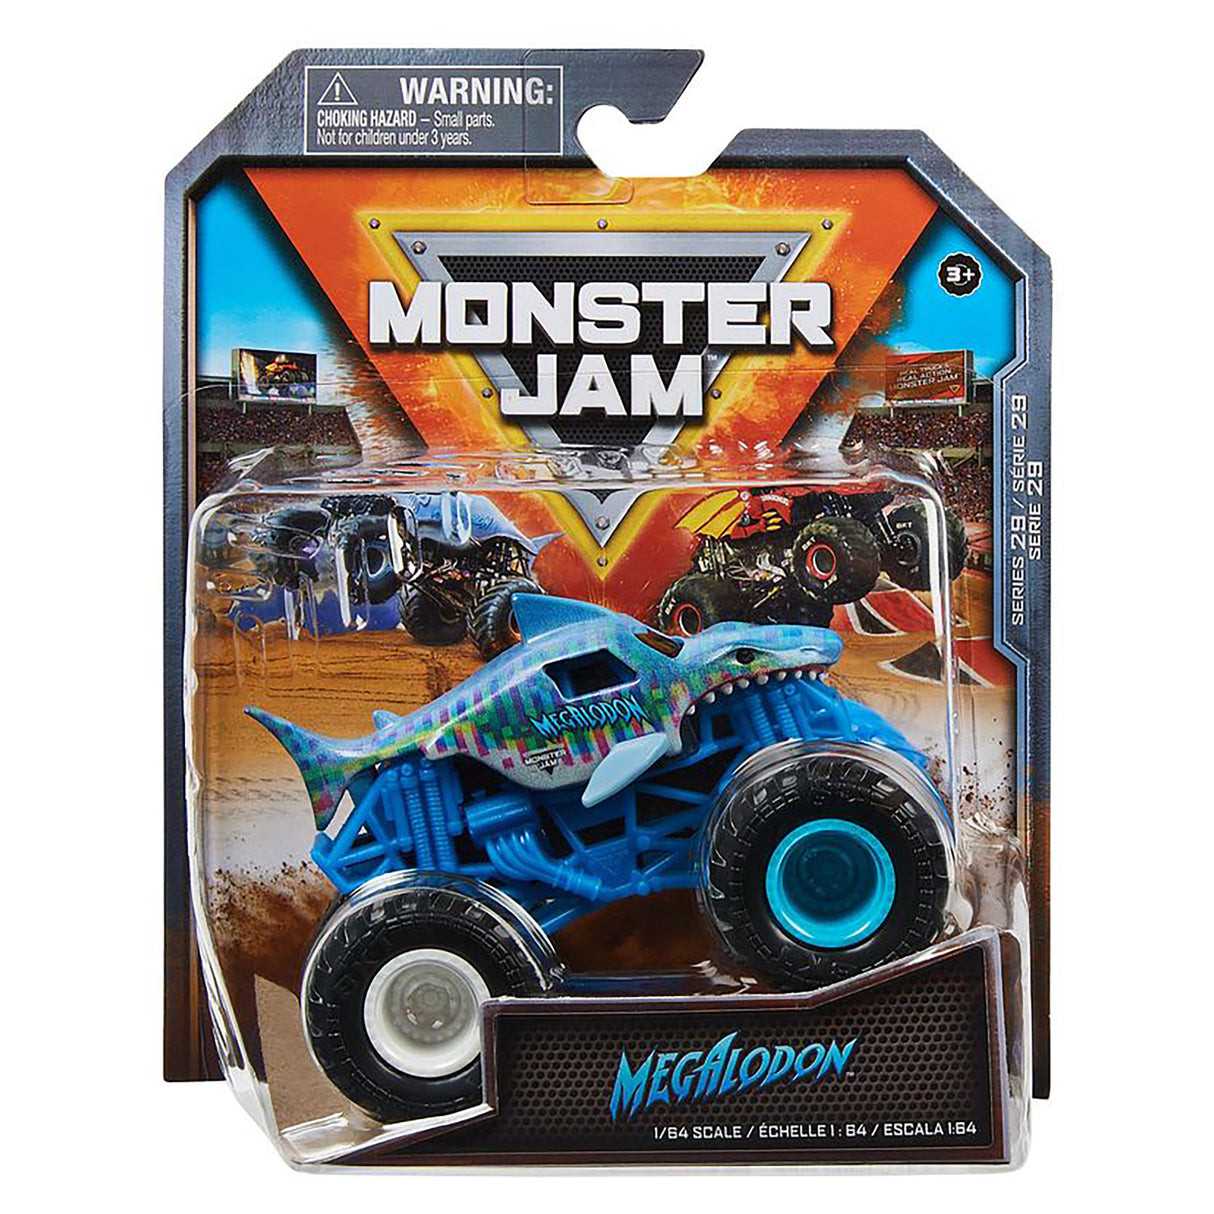 Monster Jam Megalodon 1:64 Scale